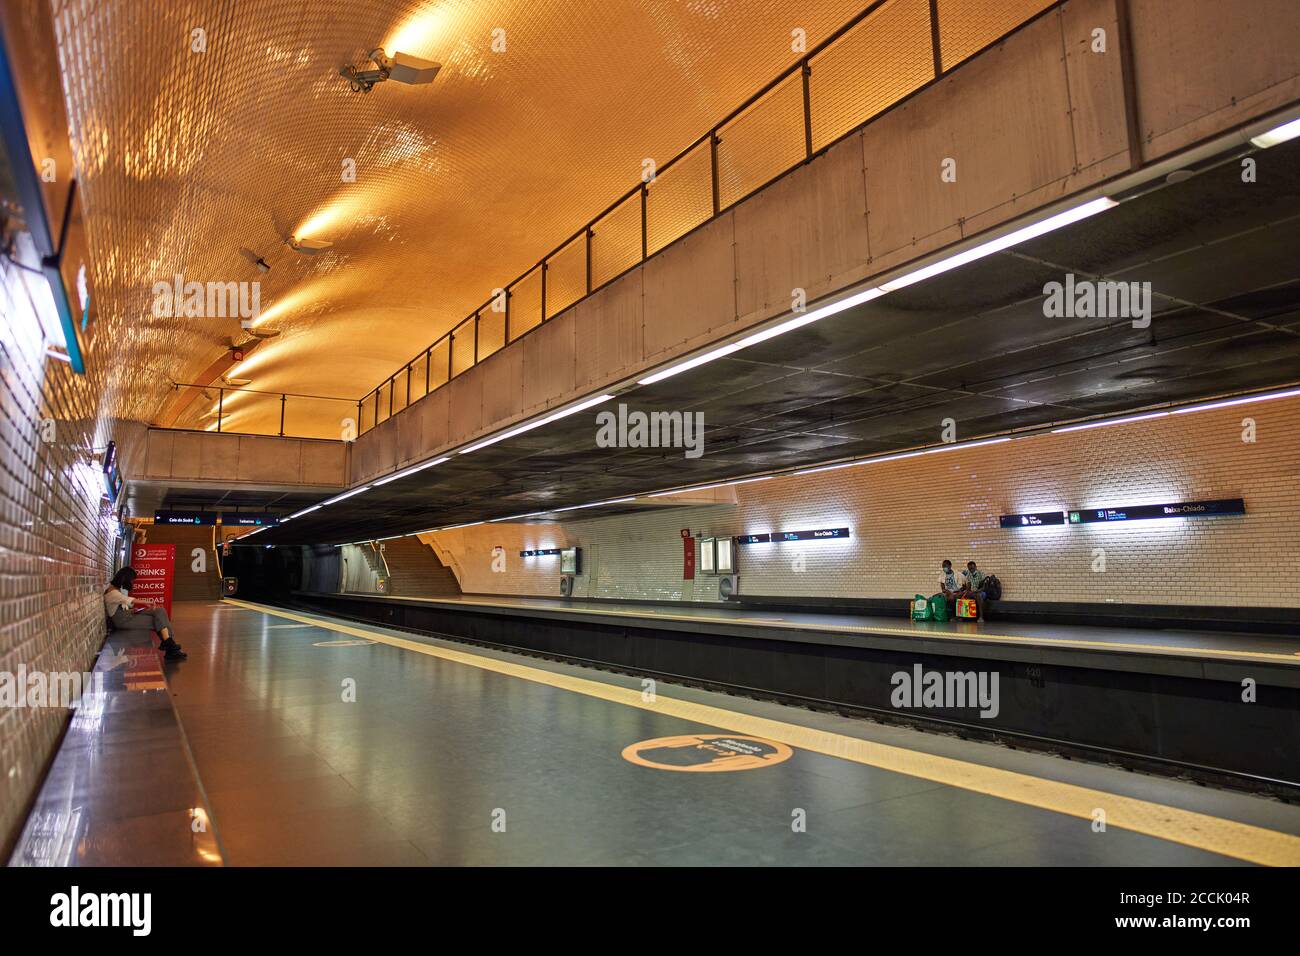 Lisboa, Lissabon, Portugal, 16 de agosto de 2020. Tren subterráneo con pasajeros y una señal de corona con consejos para mantener la distancia. © Peter Schatz / Alam Foto de stock